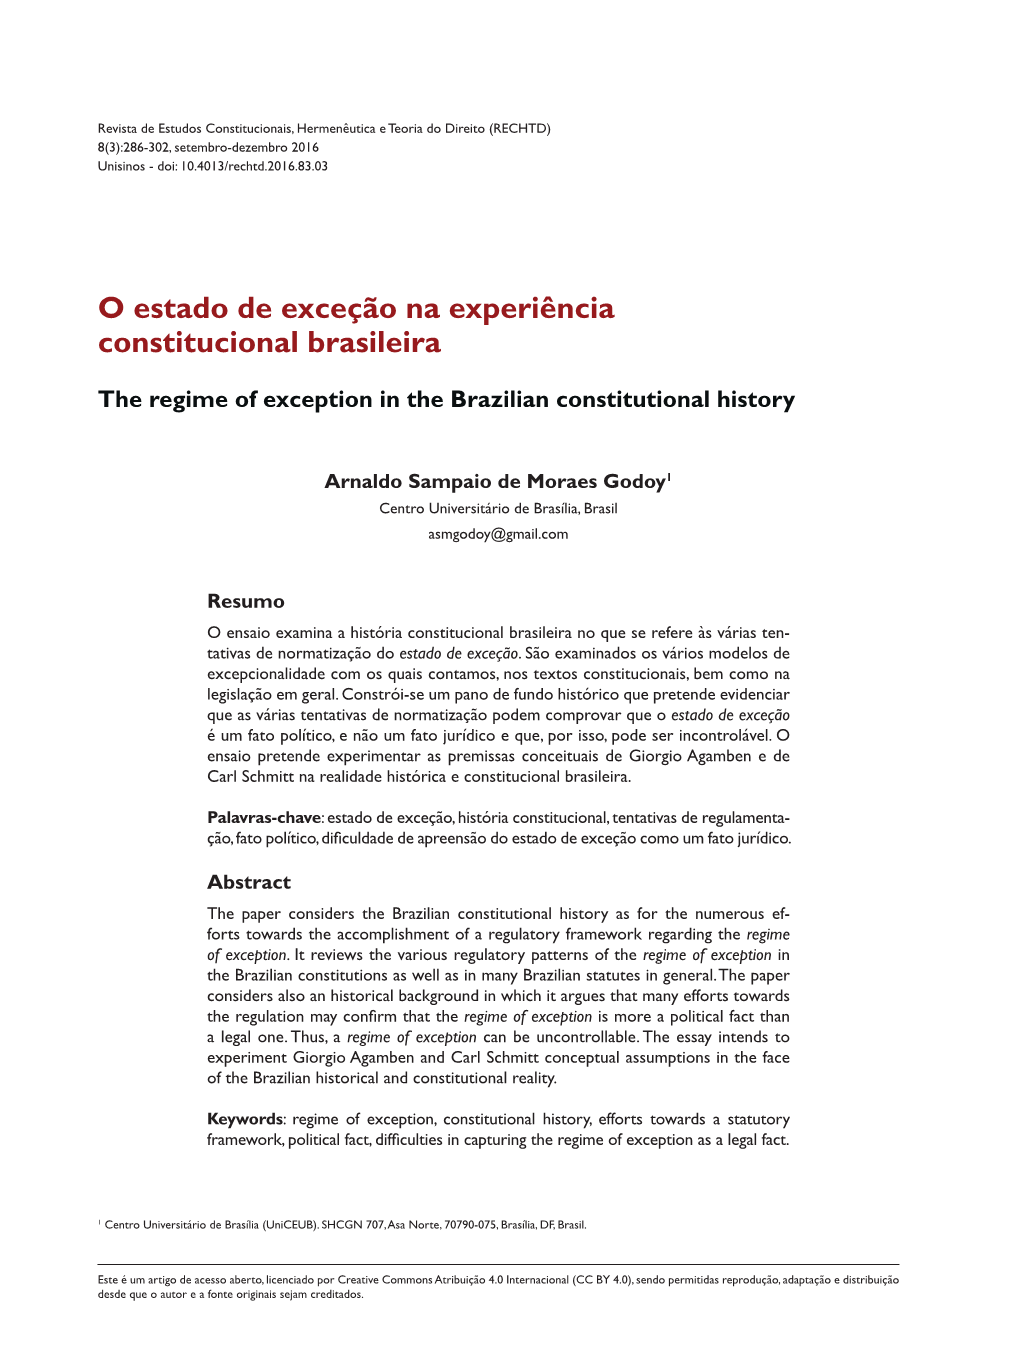 O Estado De Exceção Na Experiência Constitucional Brasileira